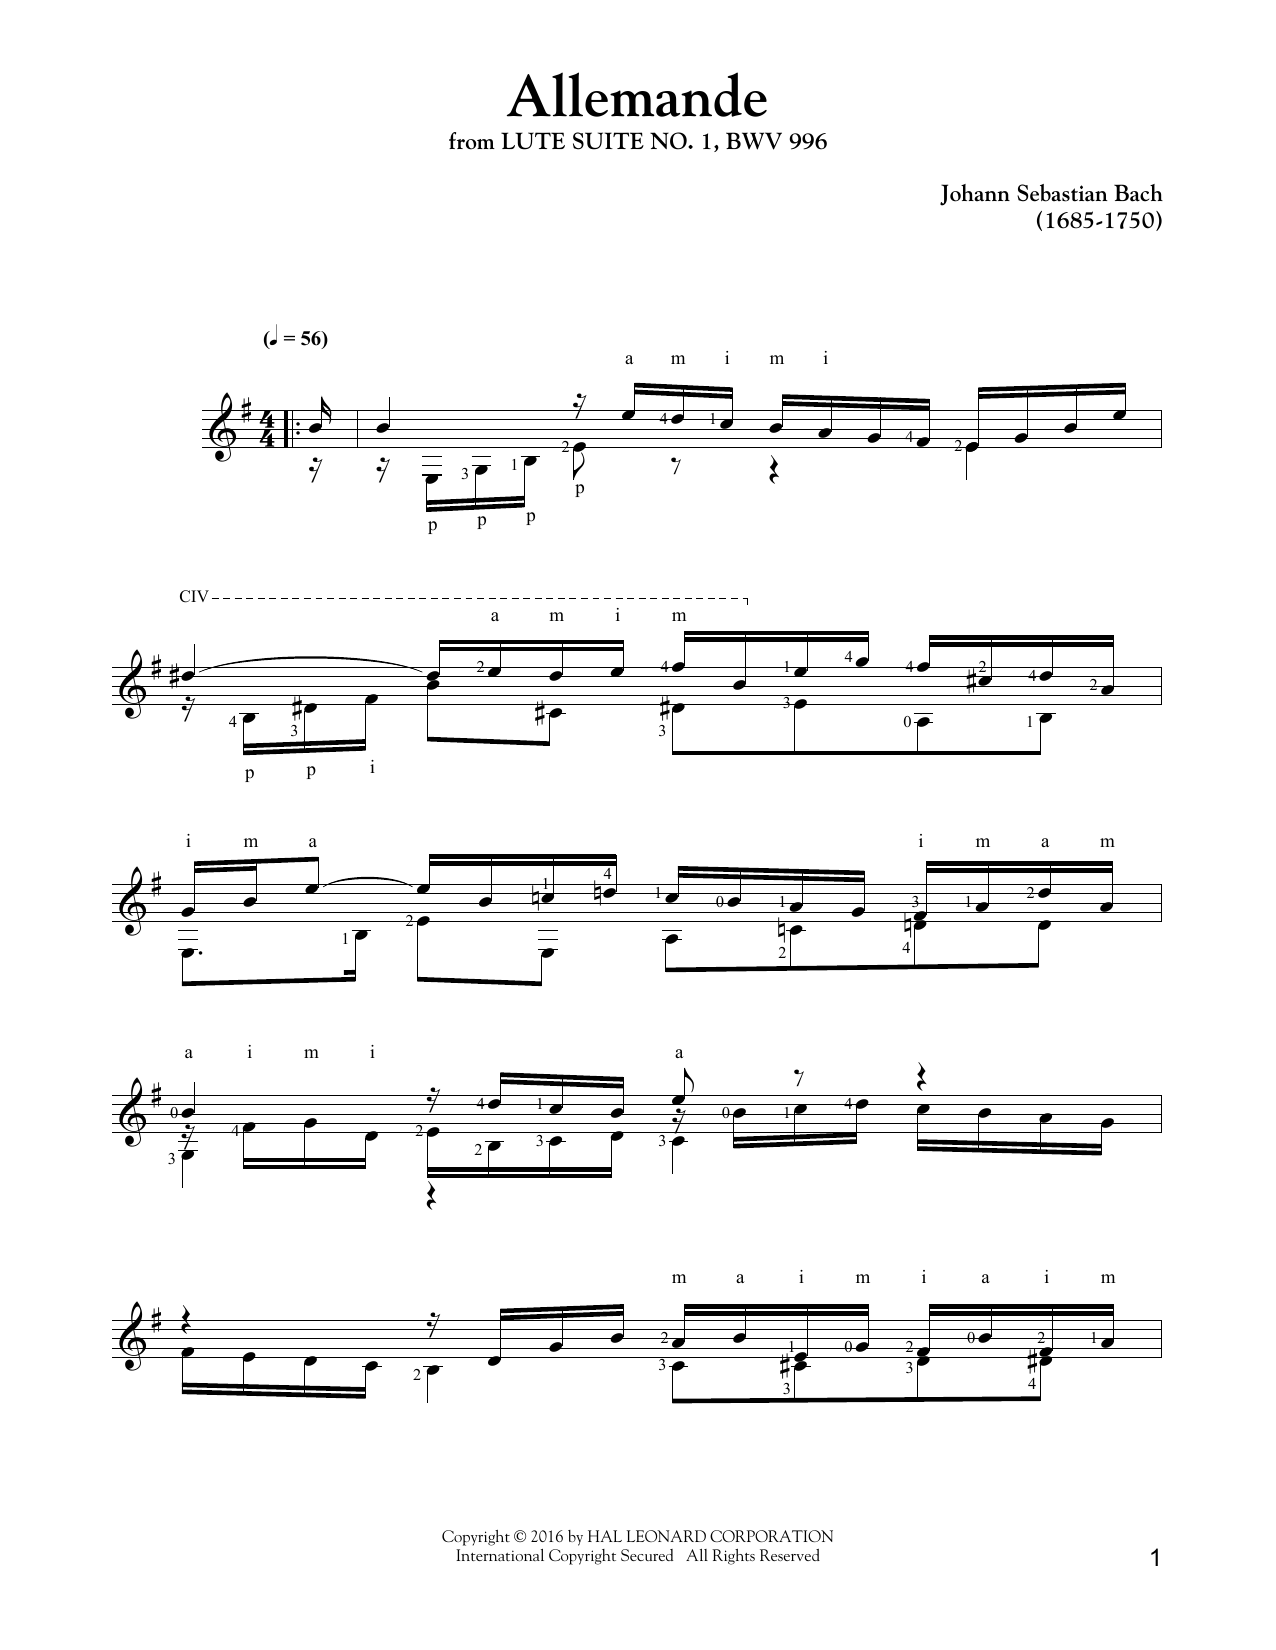 Download Johann Sebastian Bach Allemande Sheet Music